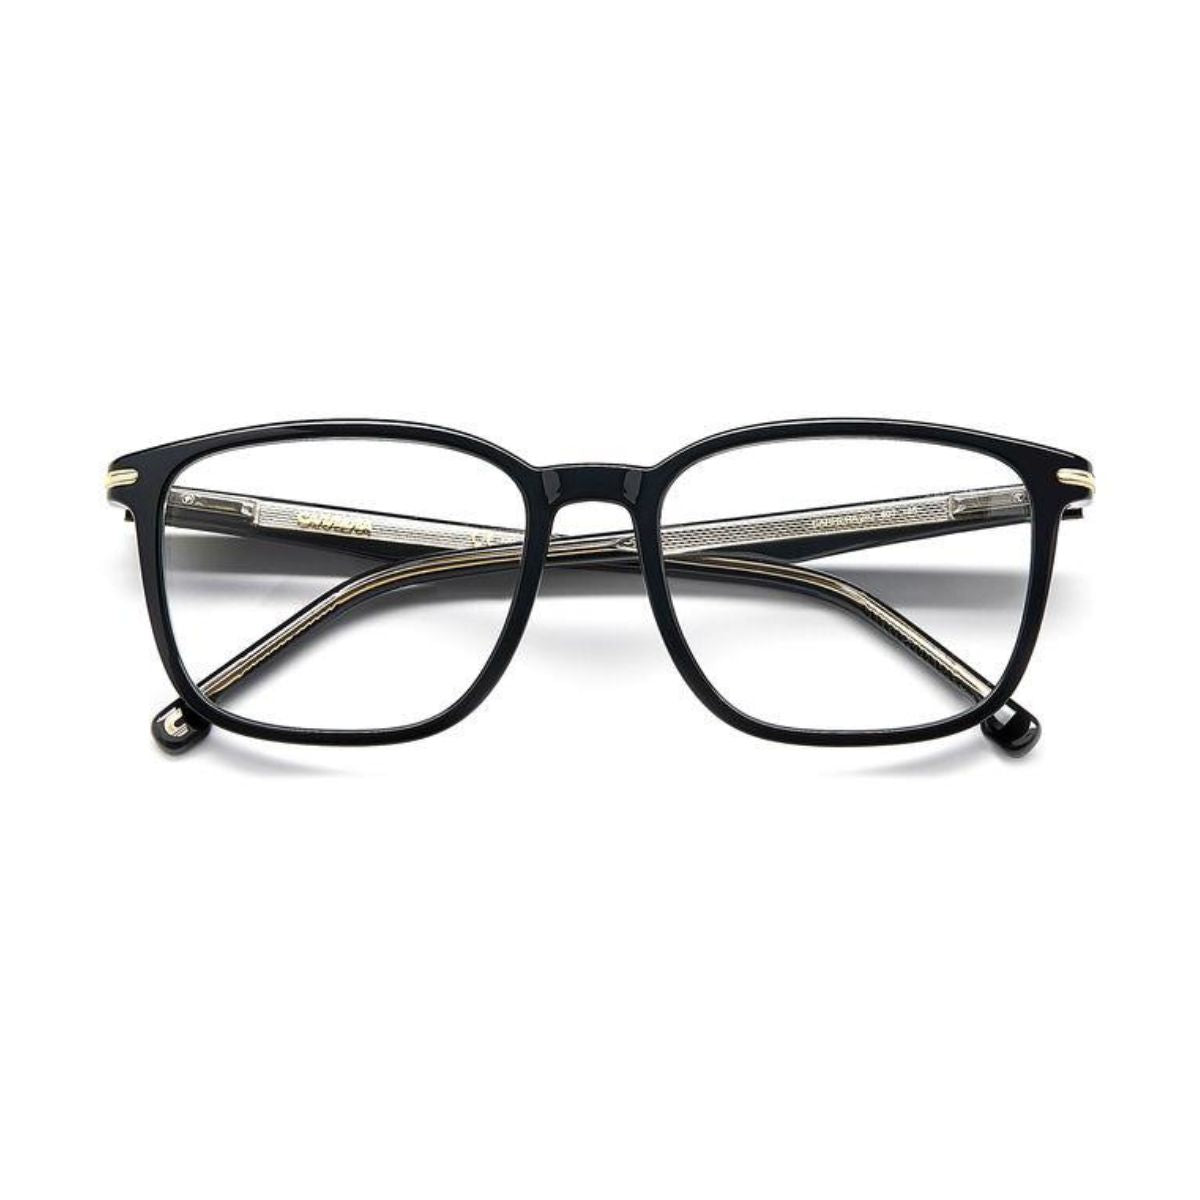 "stylish Carrera 292 807 eyesight & power glasses frame for men's online at optoium"